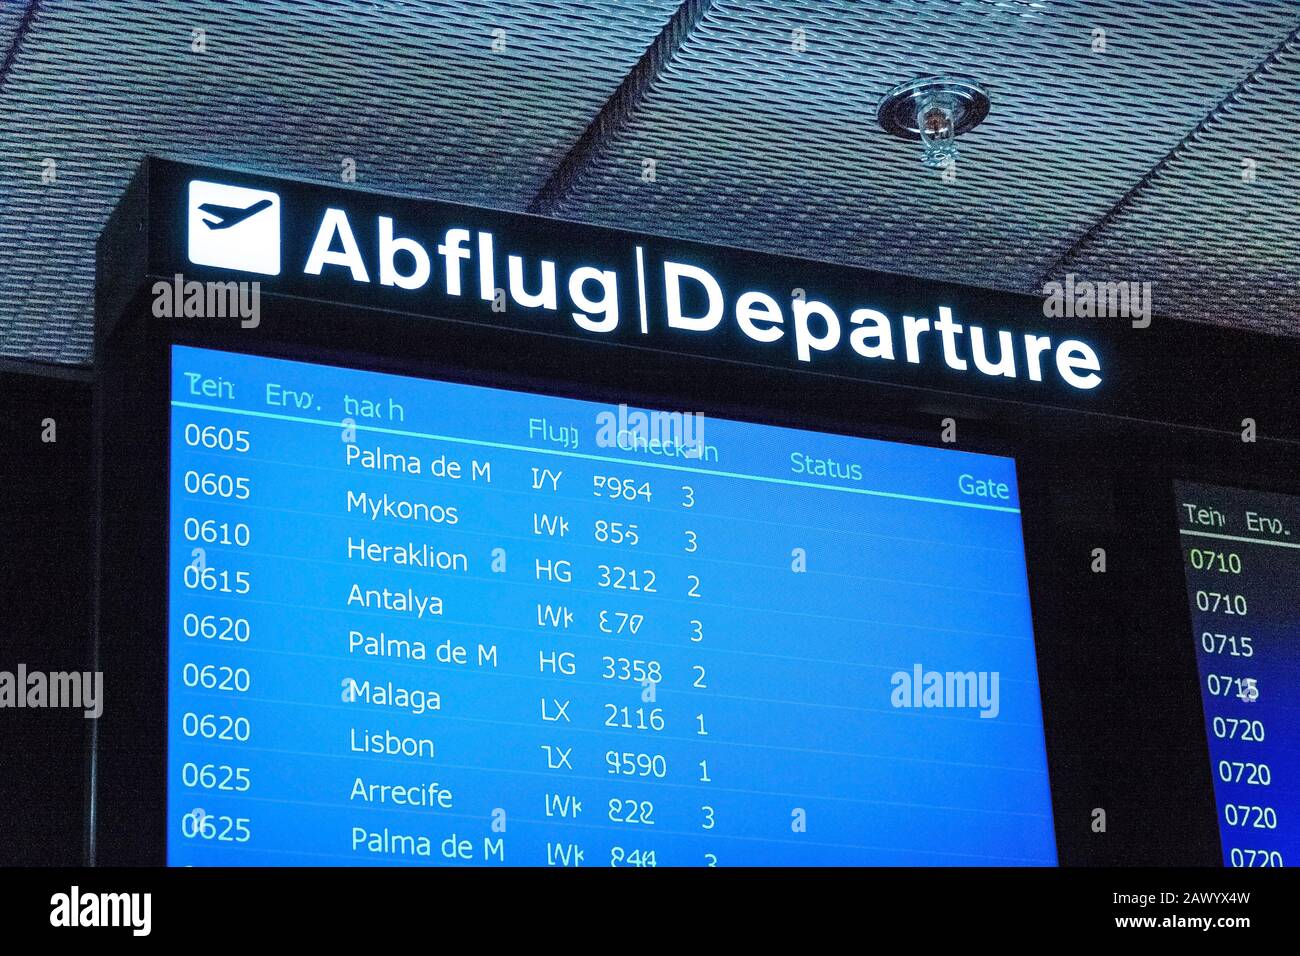 Zurigo, Svizzera - 11 Giugno 2017: Cartello Aeroporto, Partenza (Abblug) Foto Stock